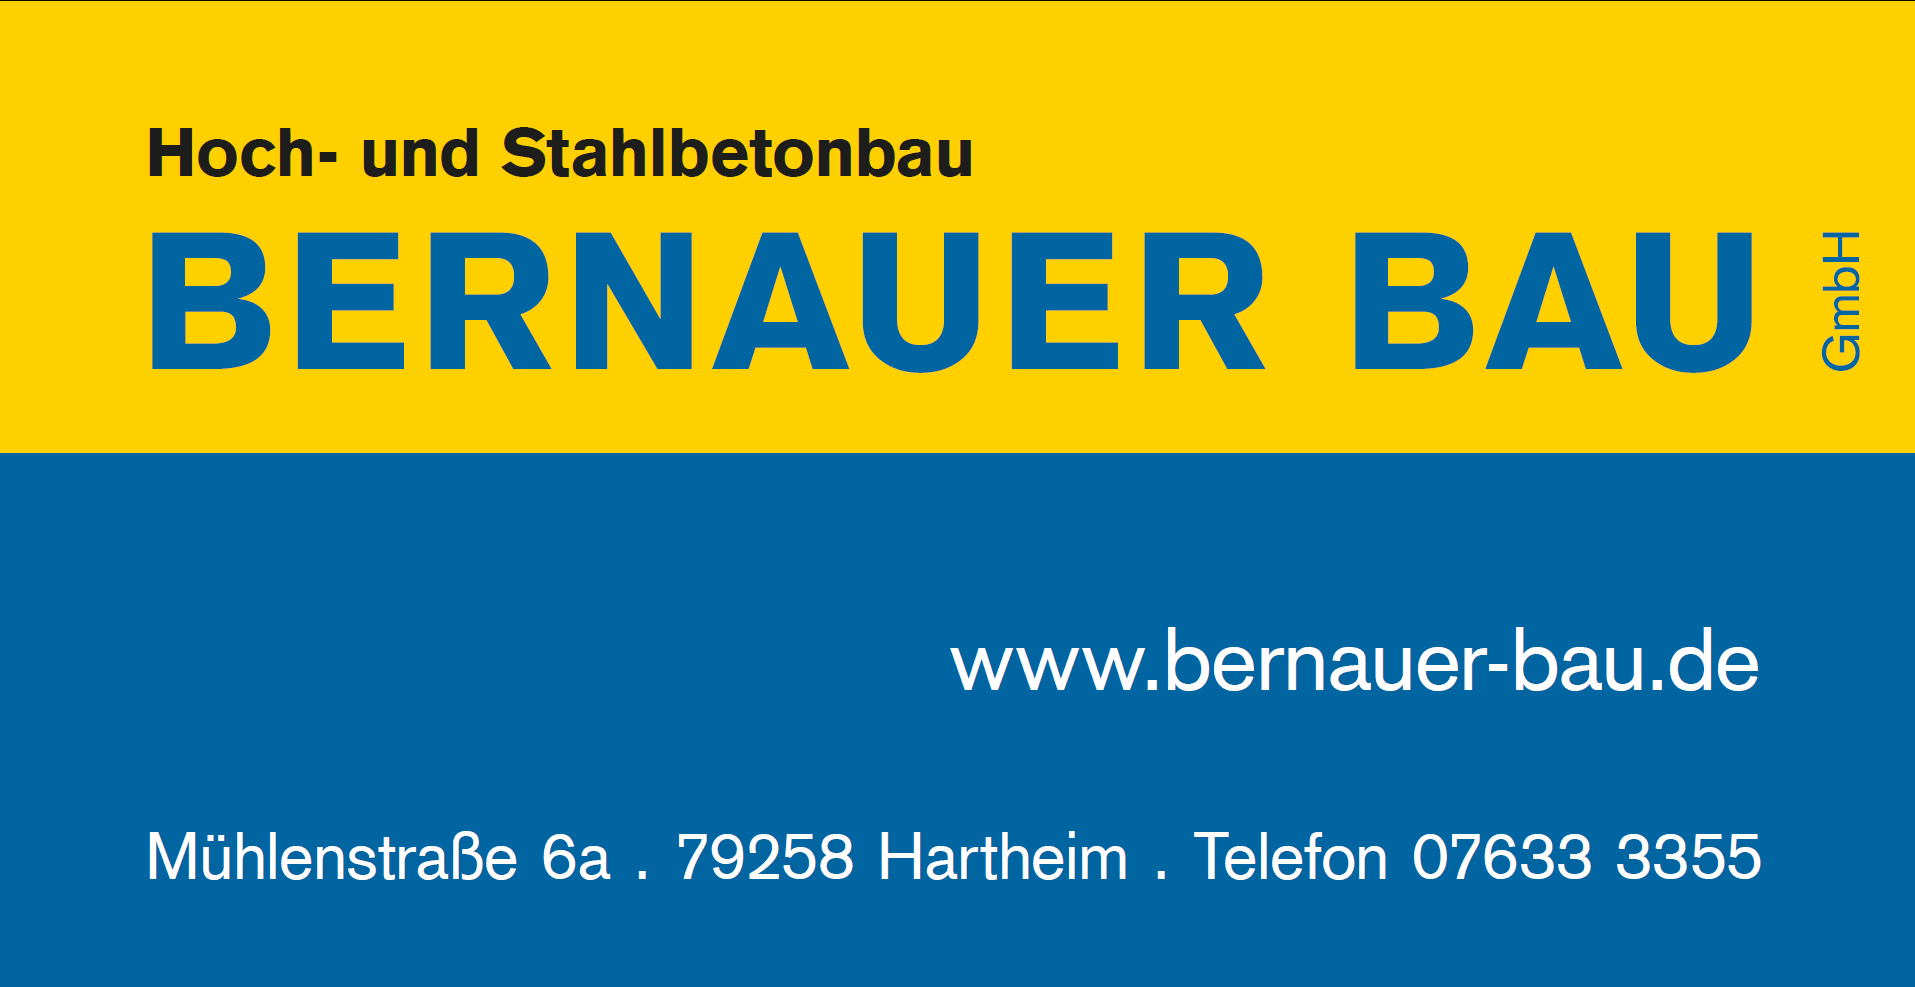 Bernauer Bau GmbH